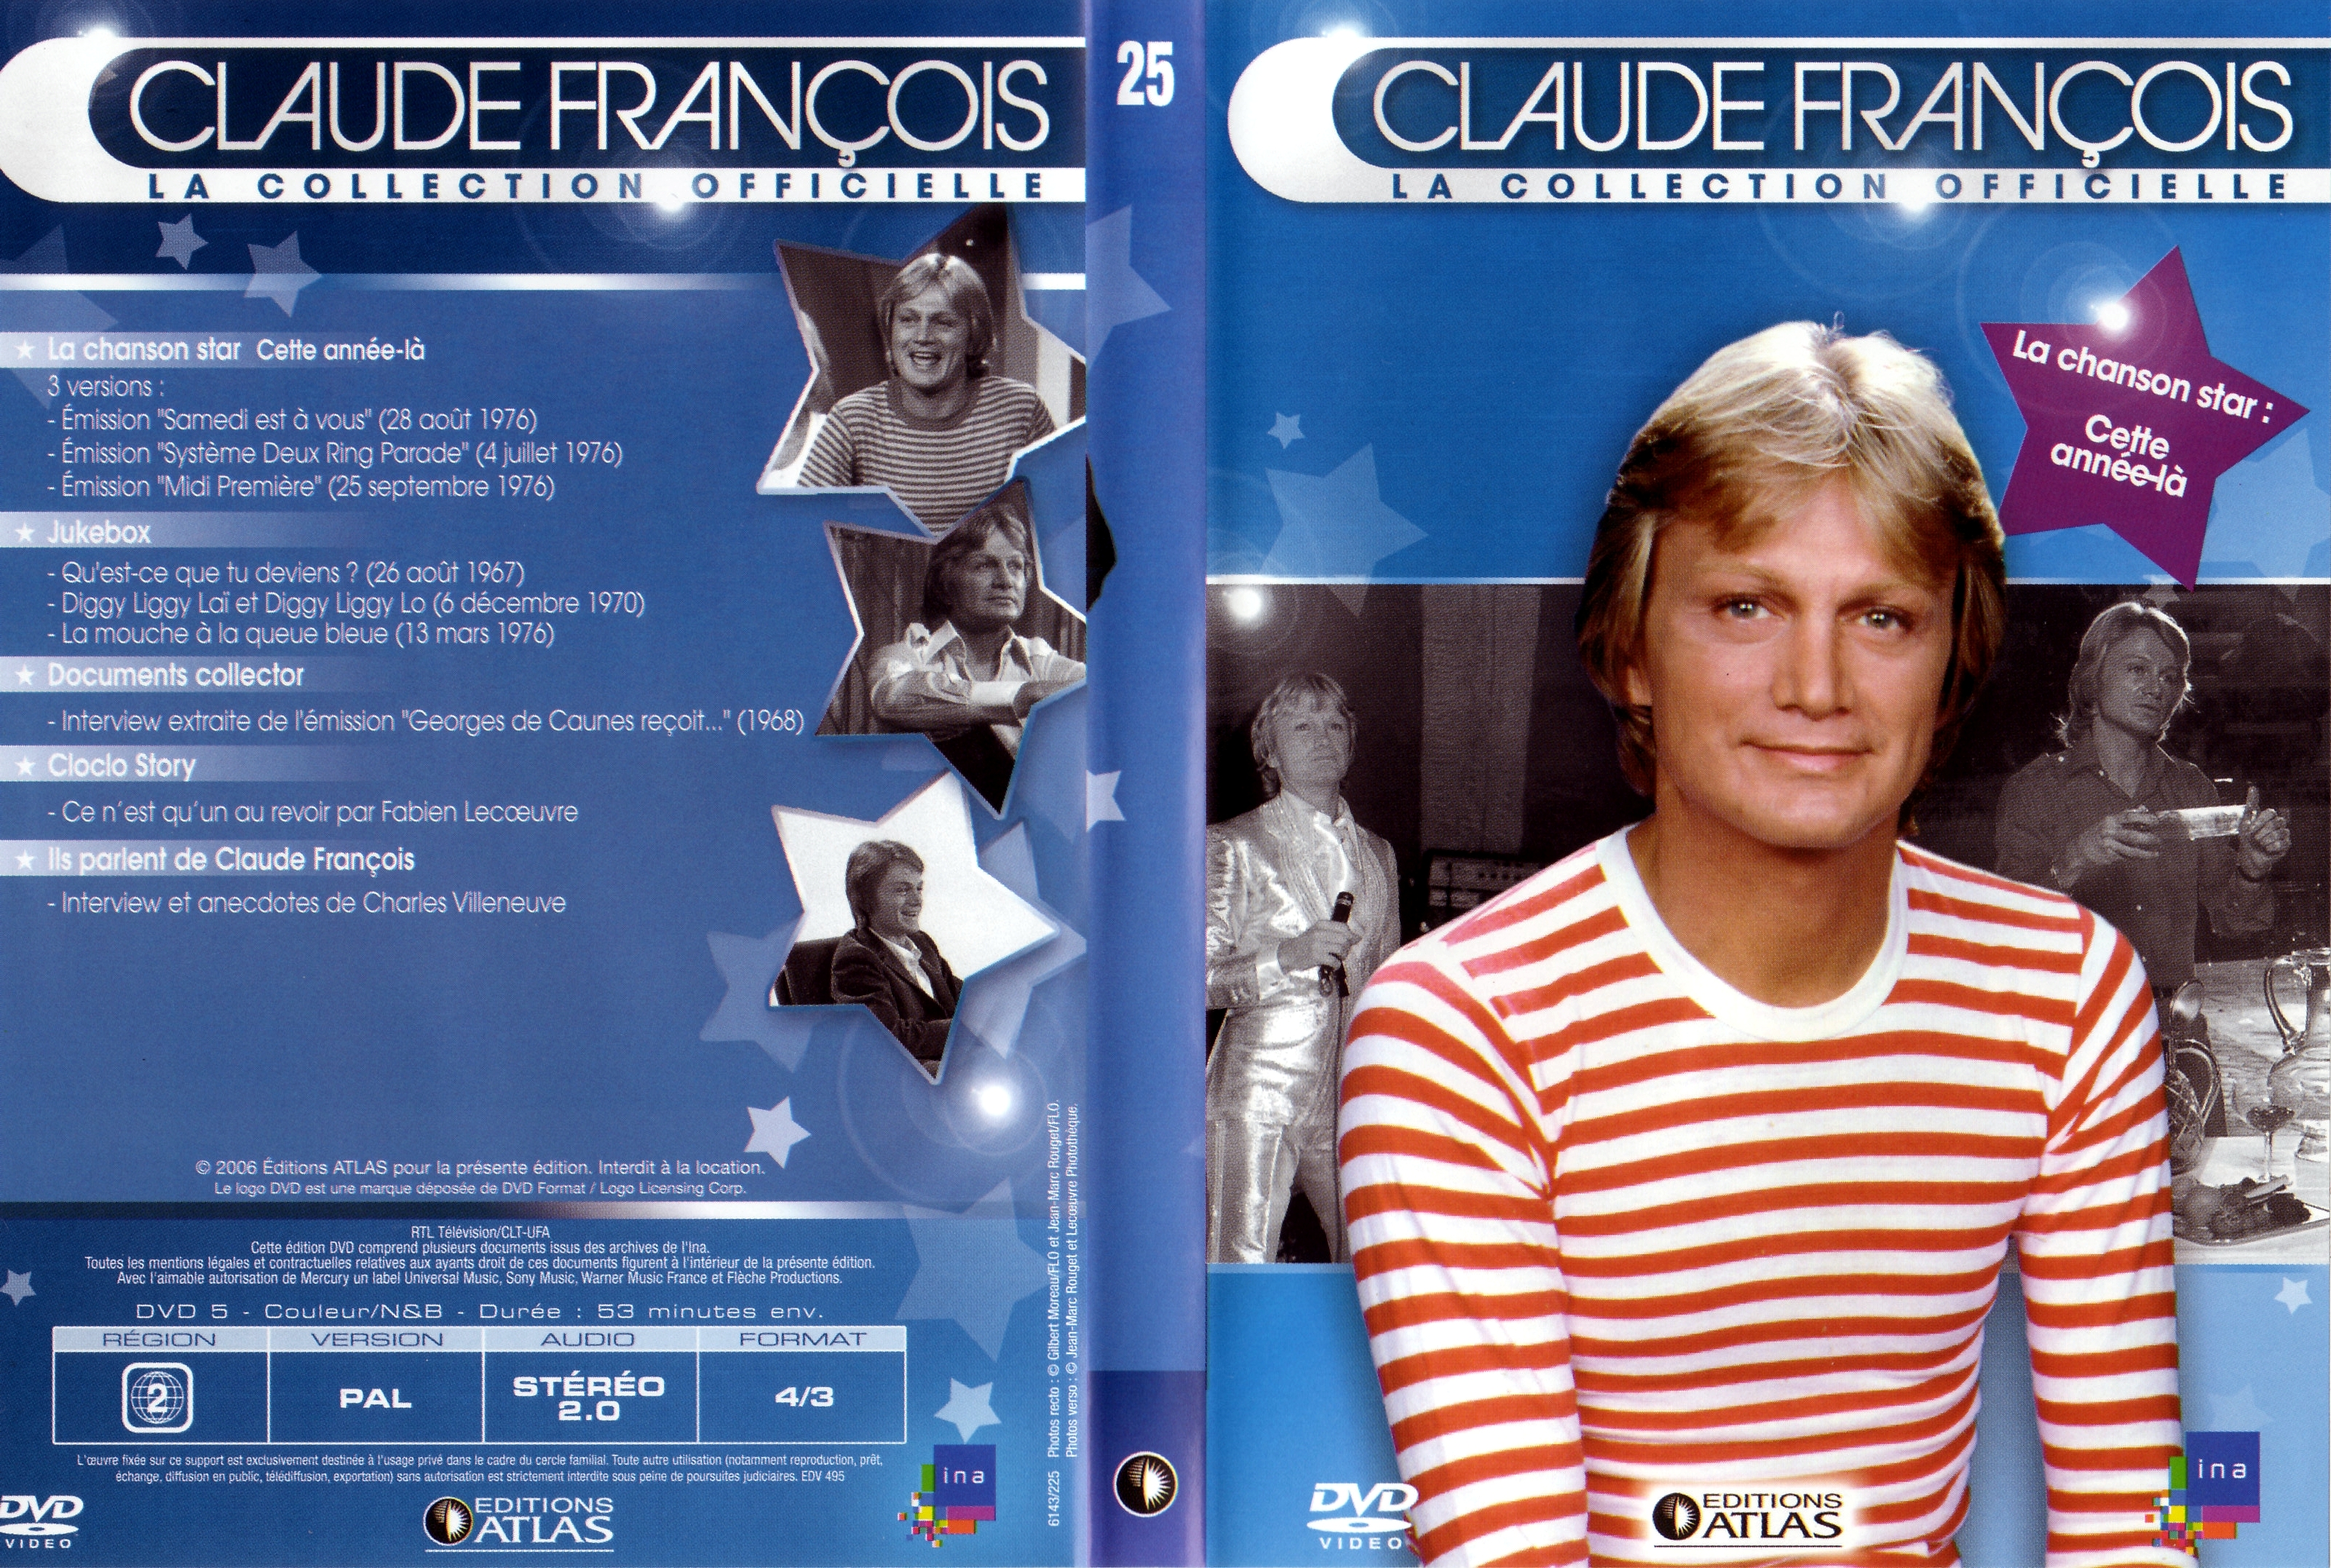 Jaquette DVD Claude Francois la collection officielle vol 25